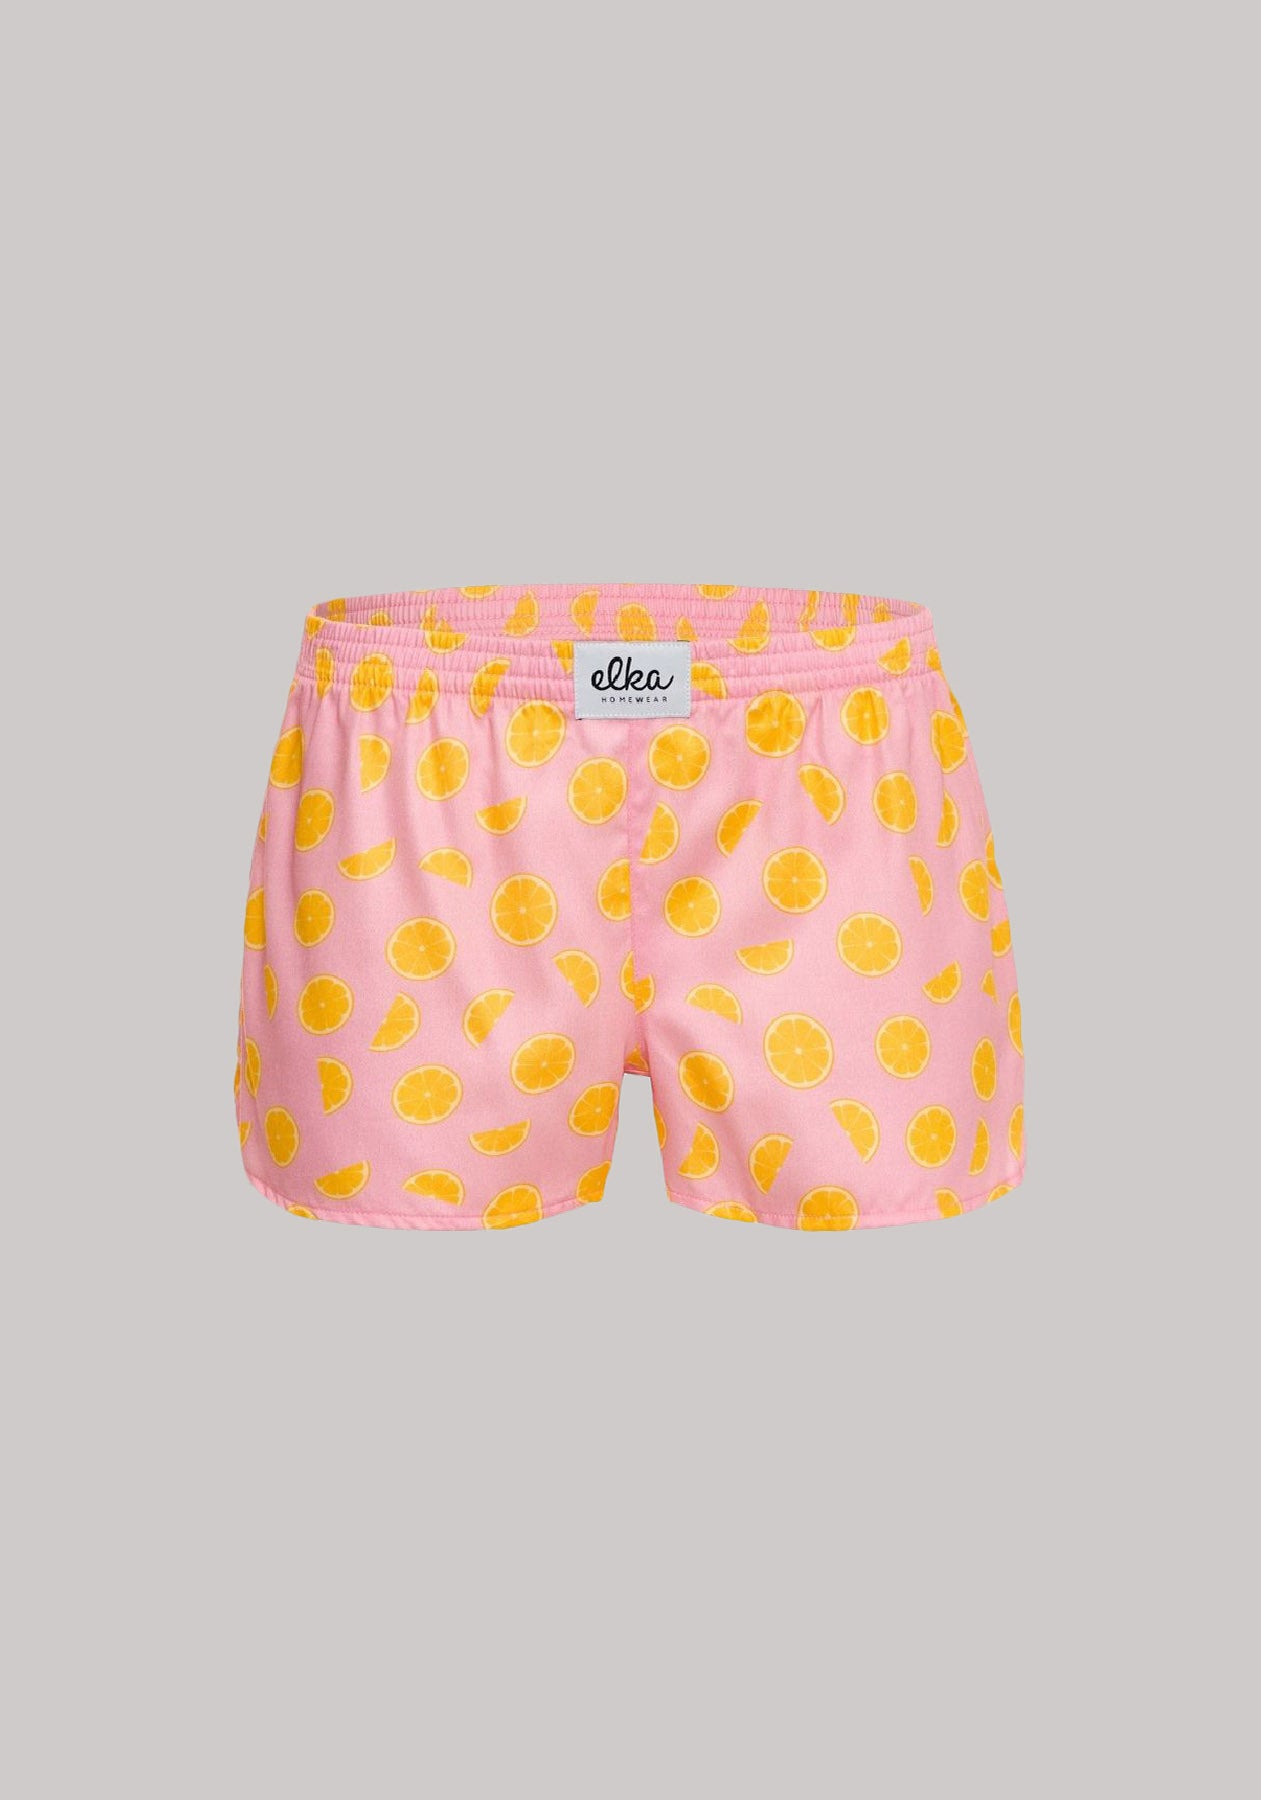 Women's shorts Lemons